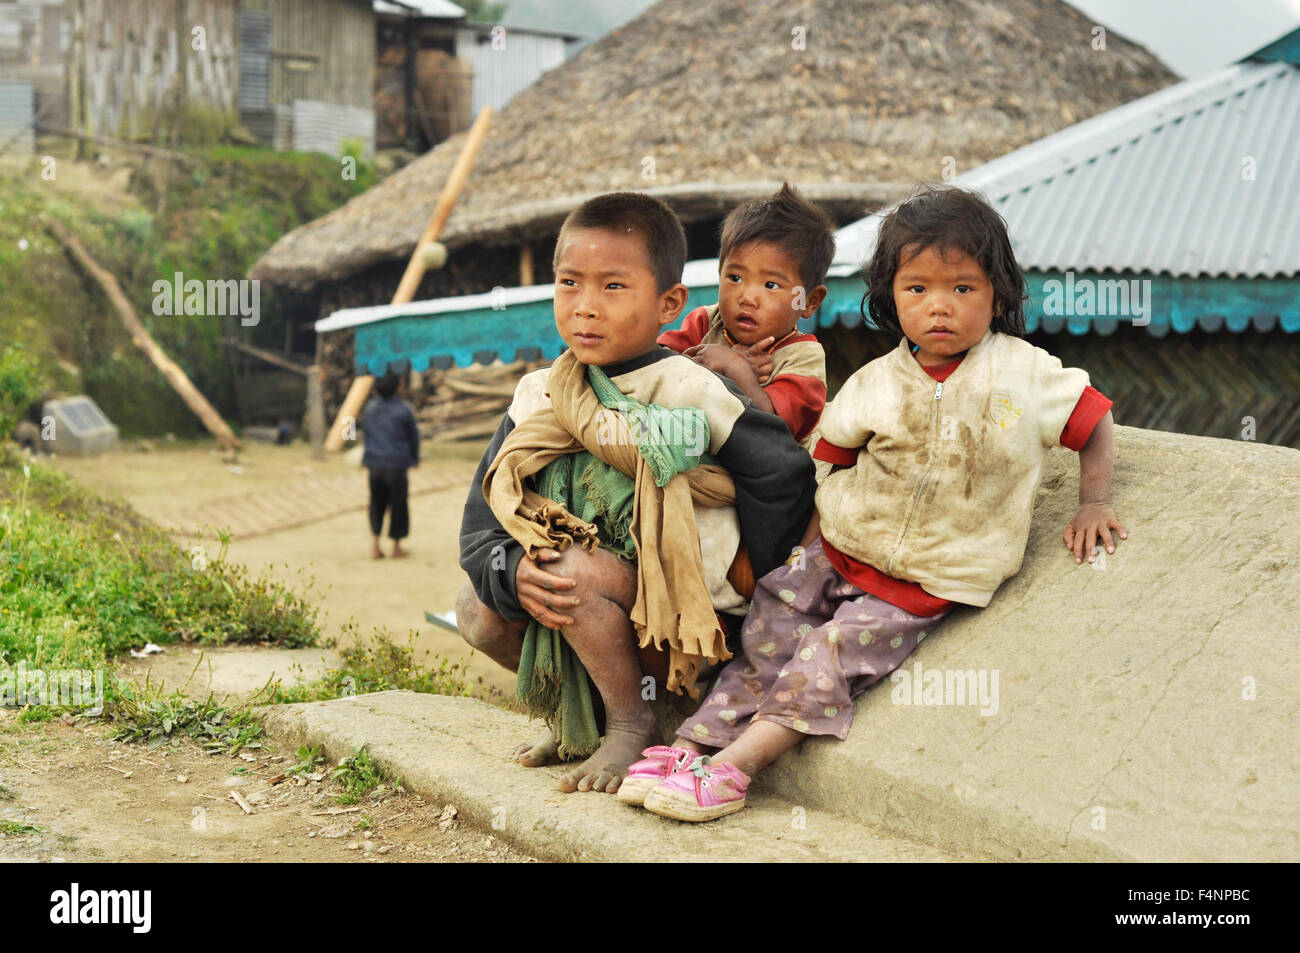 Nagaland, Indien - März 2012: Arme Kinder auf der Straße des Dorfes in Nagaland, abgelegenen Region von Indien. Redaktion Dokumentarfilm. Stockfoto